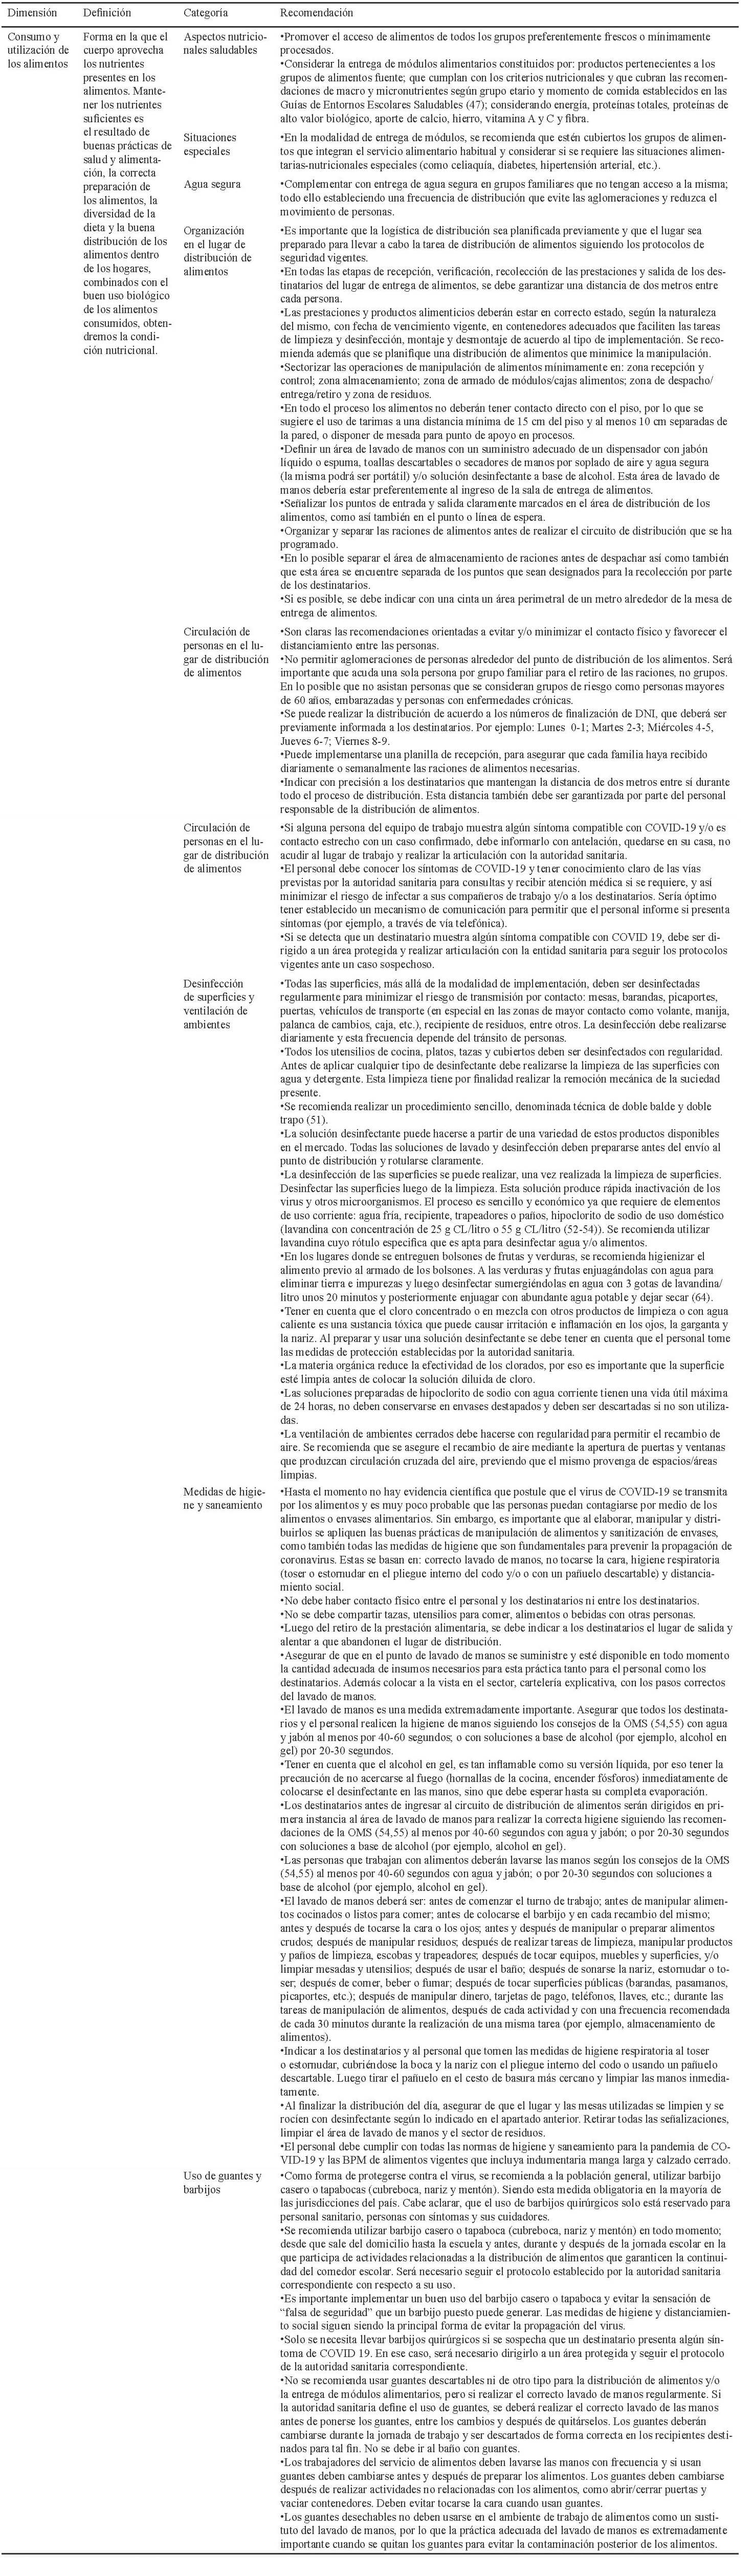 Tabla 3. Recomendaciones propuestas para la implementación de comedores escolares según la dimensión de consumo de la SAN a partir de la revisión de la literatura y las rondas de validación, 2020.